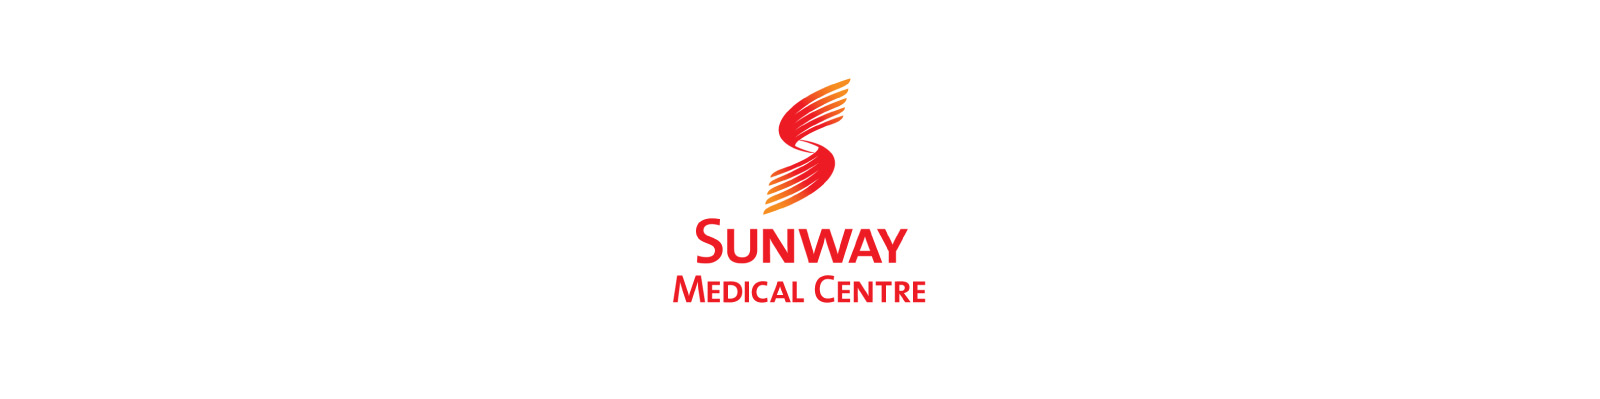 SUNWAY MEDICAL CENTRE